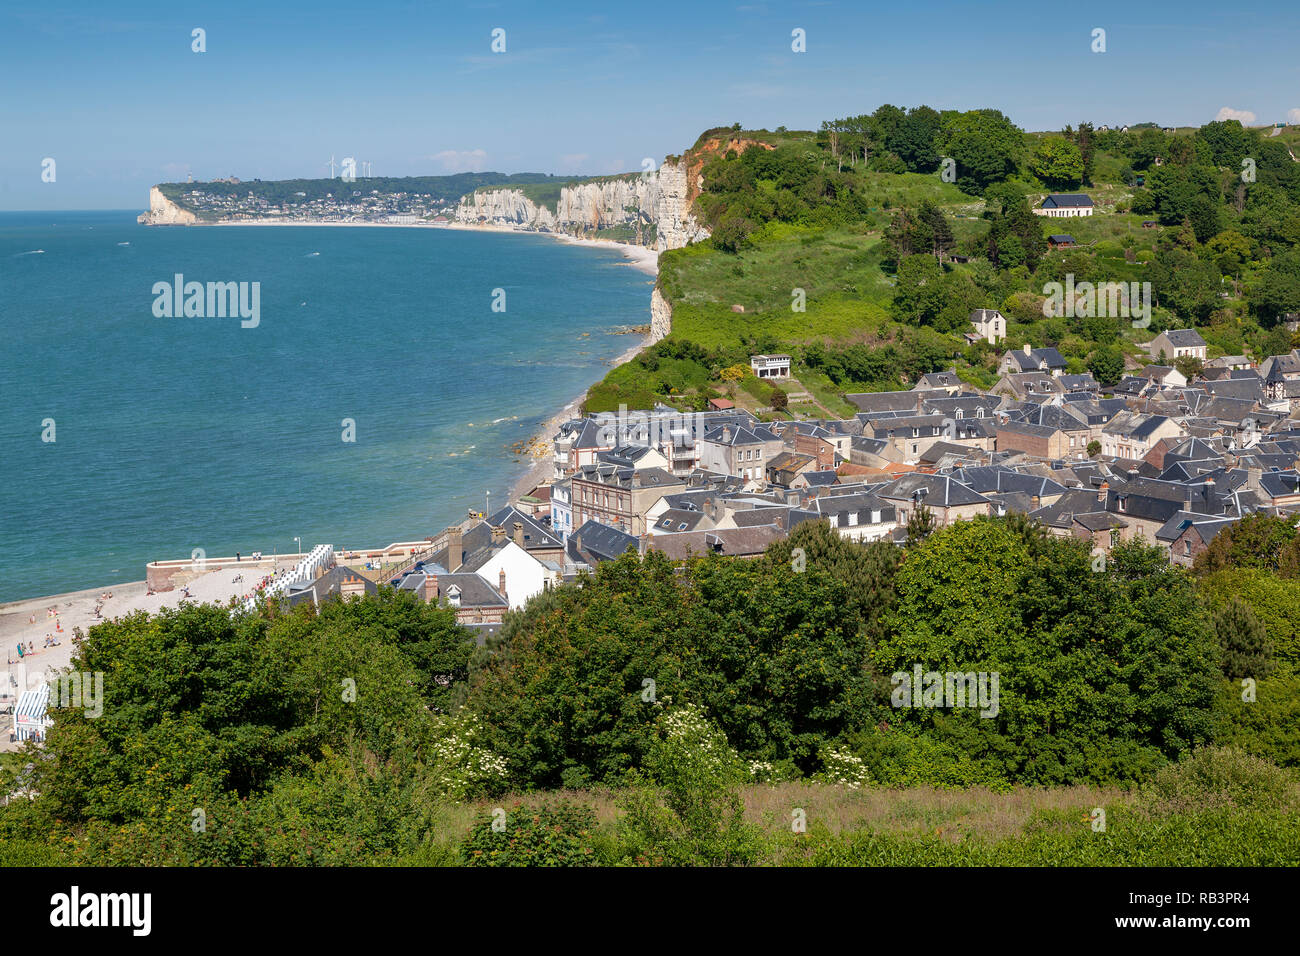 Felsenküste bei Yport in der Normandie, Frankreich Stock Photo